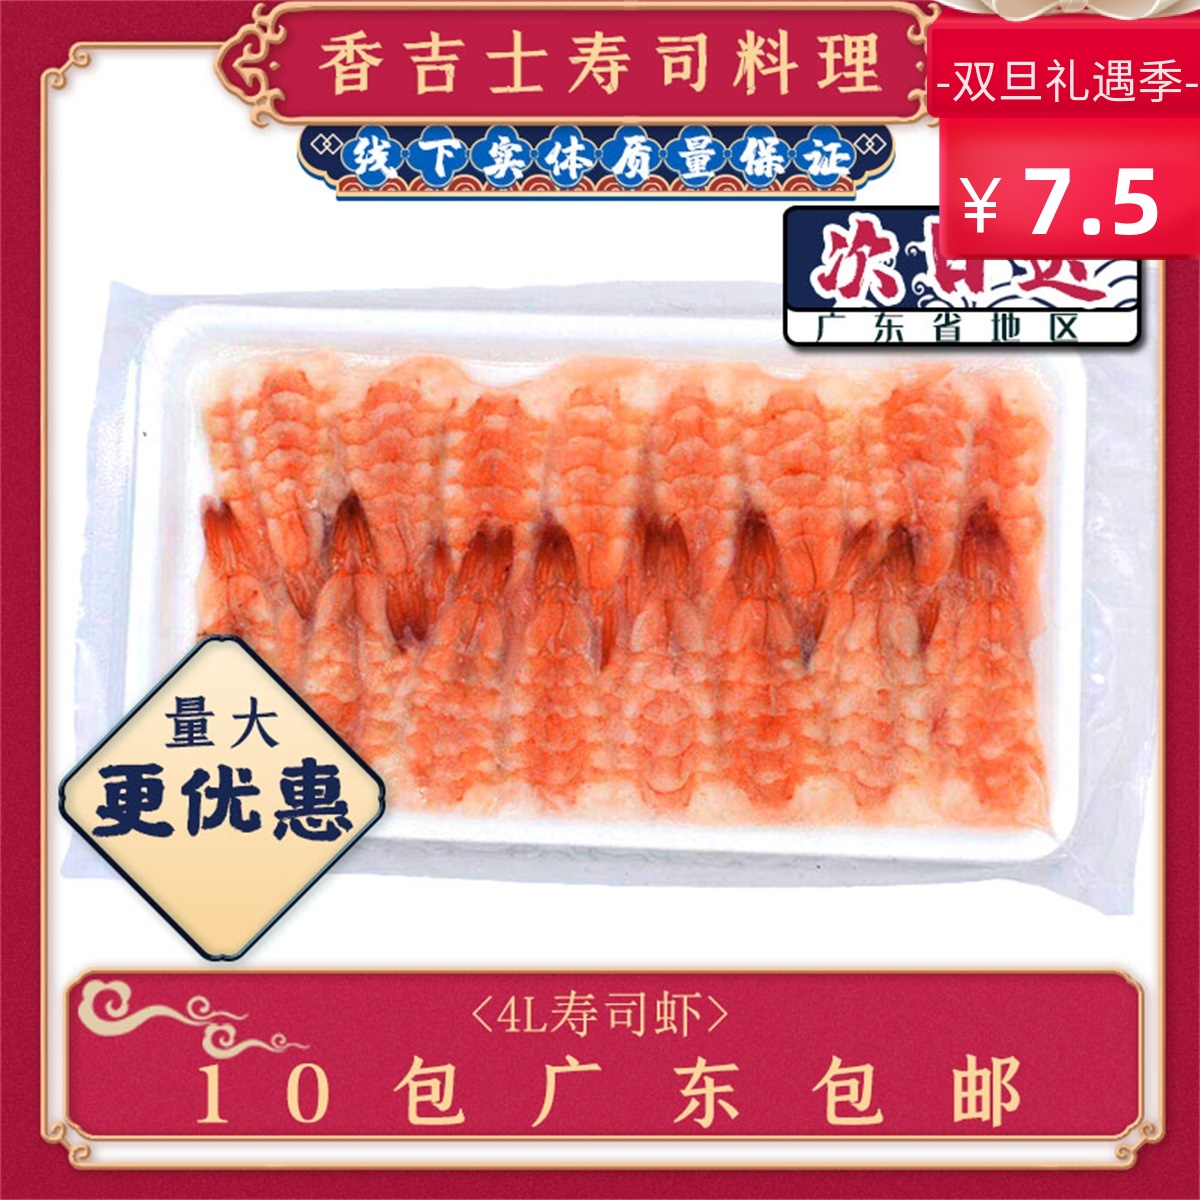 4L寿司熟虾30只大号南美寿司虾即食去头熟虾即食包邮越南进口